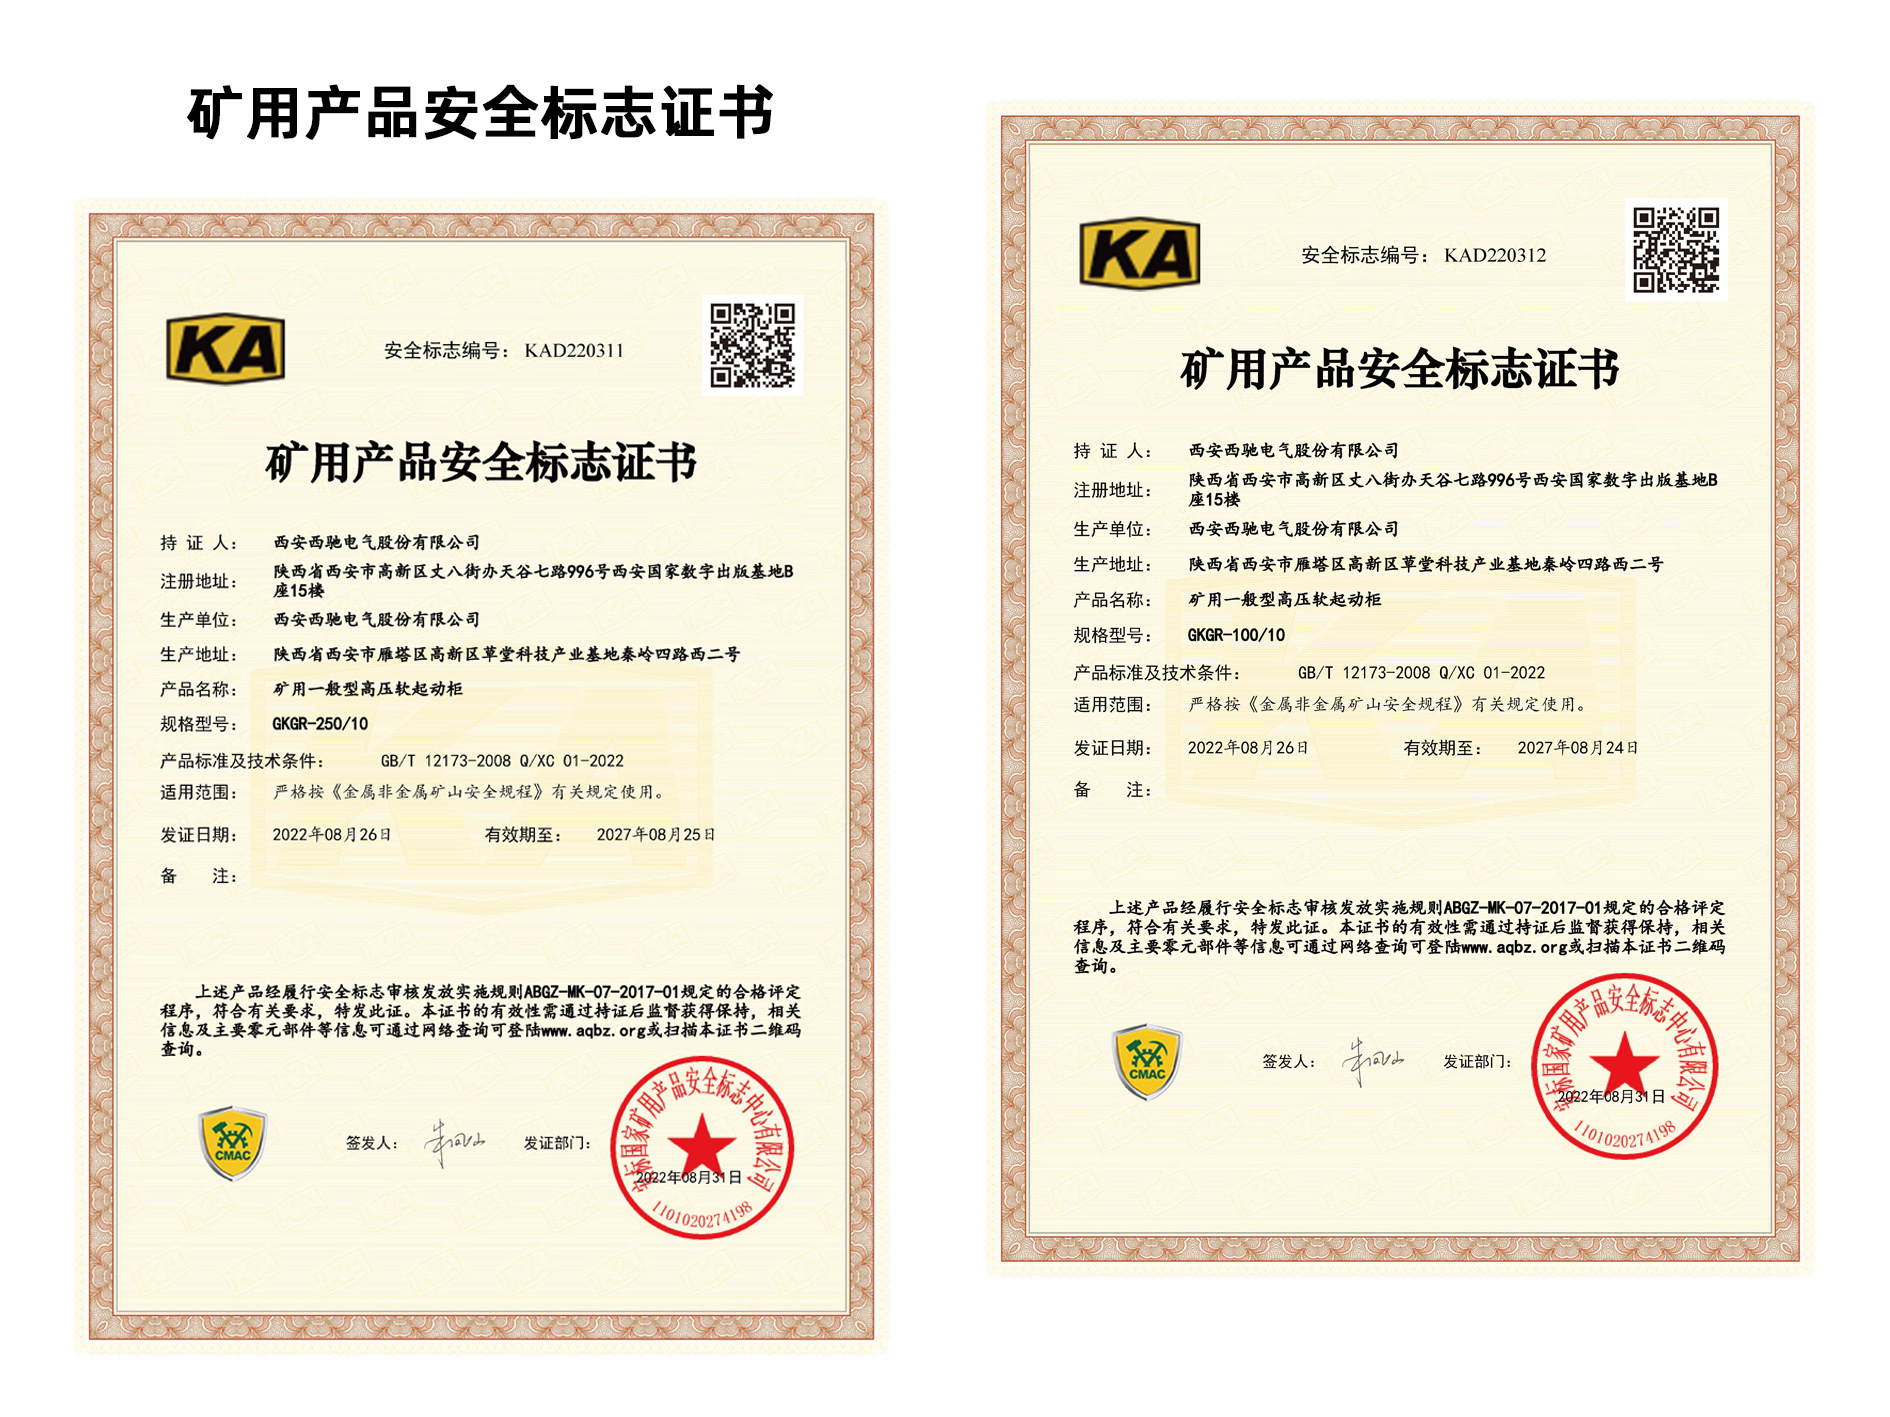 祝贺西驰电气再添2项矿用产品安全标志证书